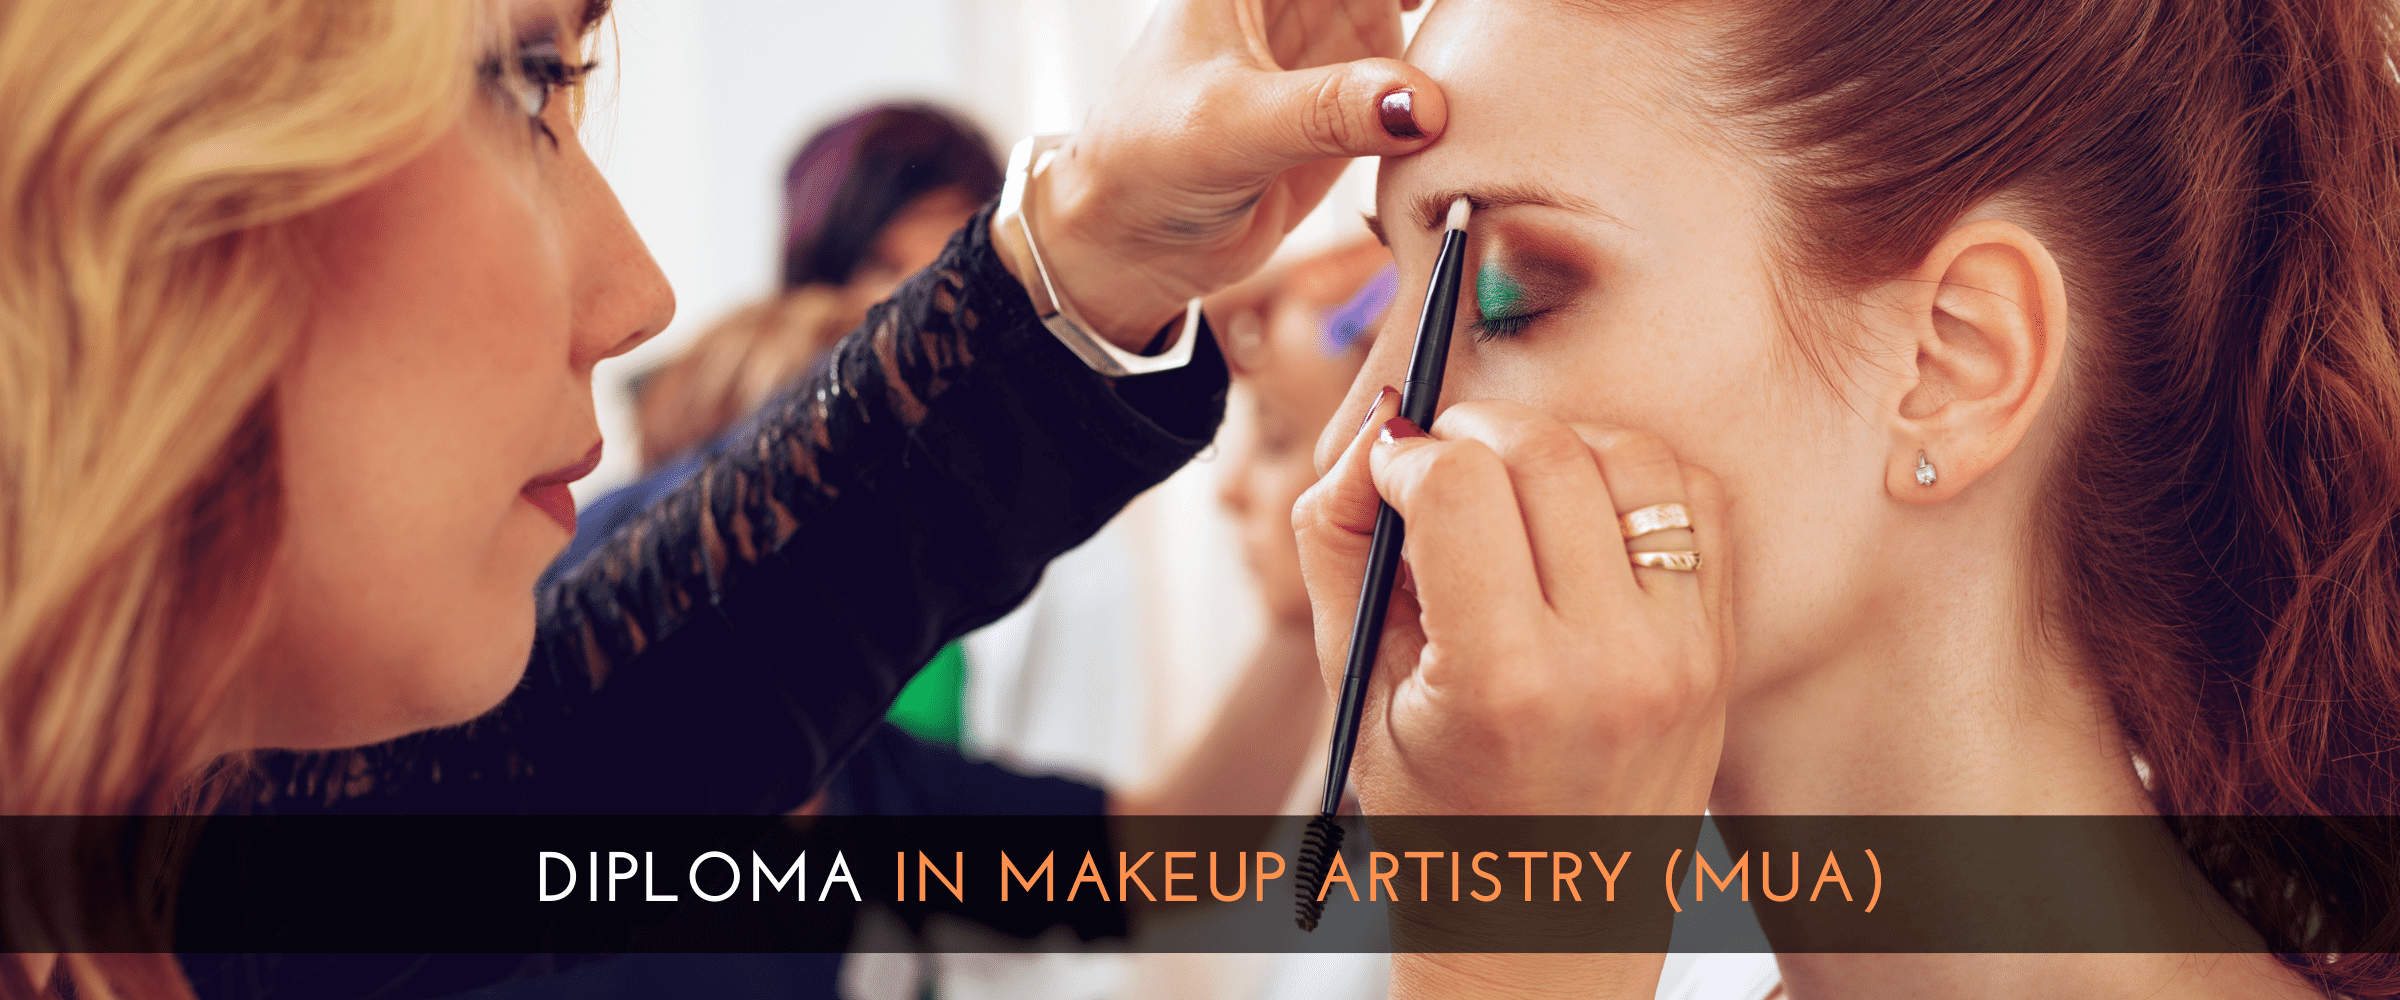 Diploma in Makeup Artistry (MUA) - London College of Arts